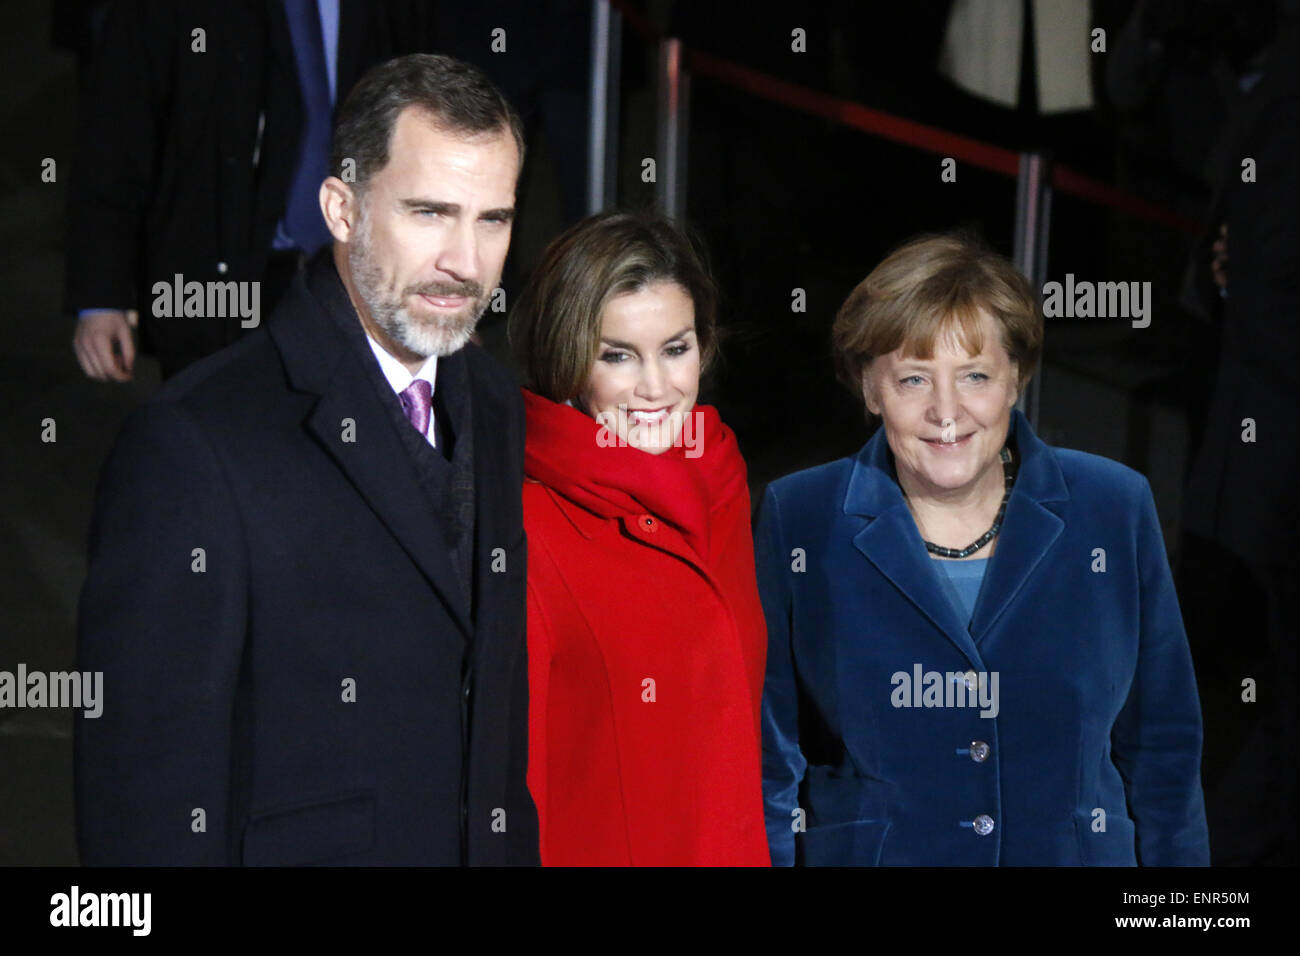 Koenig Felipe VI, Koenigin Letizia von Spanien, BKin Angela Merkel - Treffen der dt. Bundeskanzlerin mit dem spanischen Koenigspaar, Bundeskanzleramt, 1. Dezember 2014, Berlin. Stock Photo